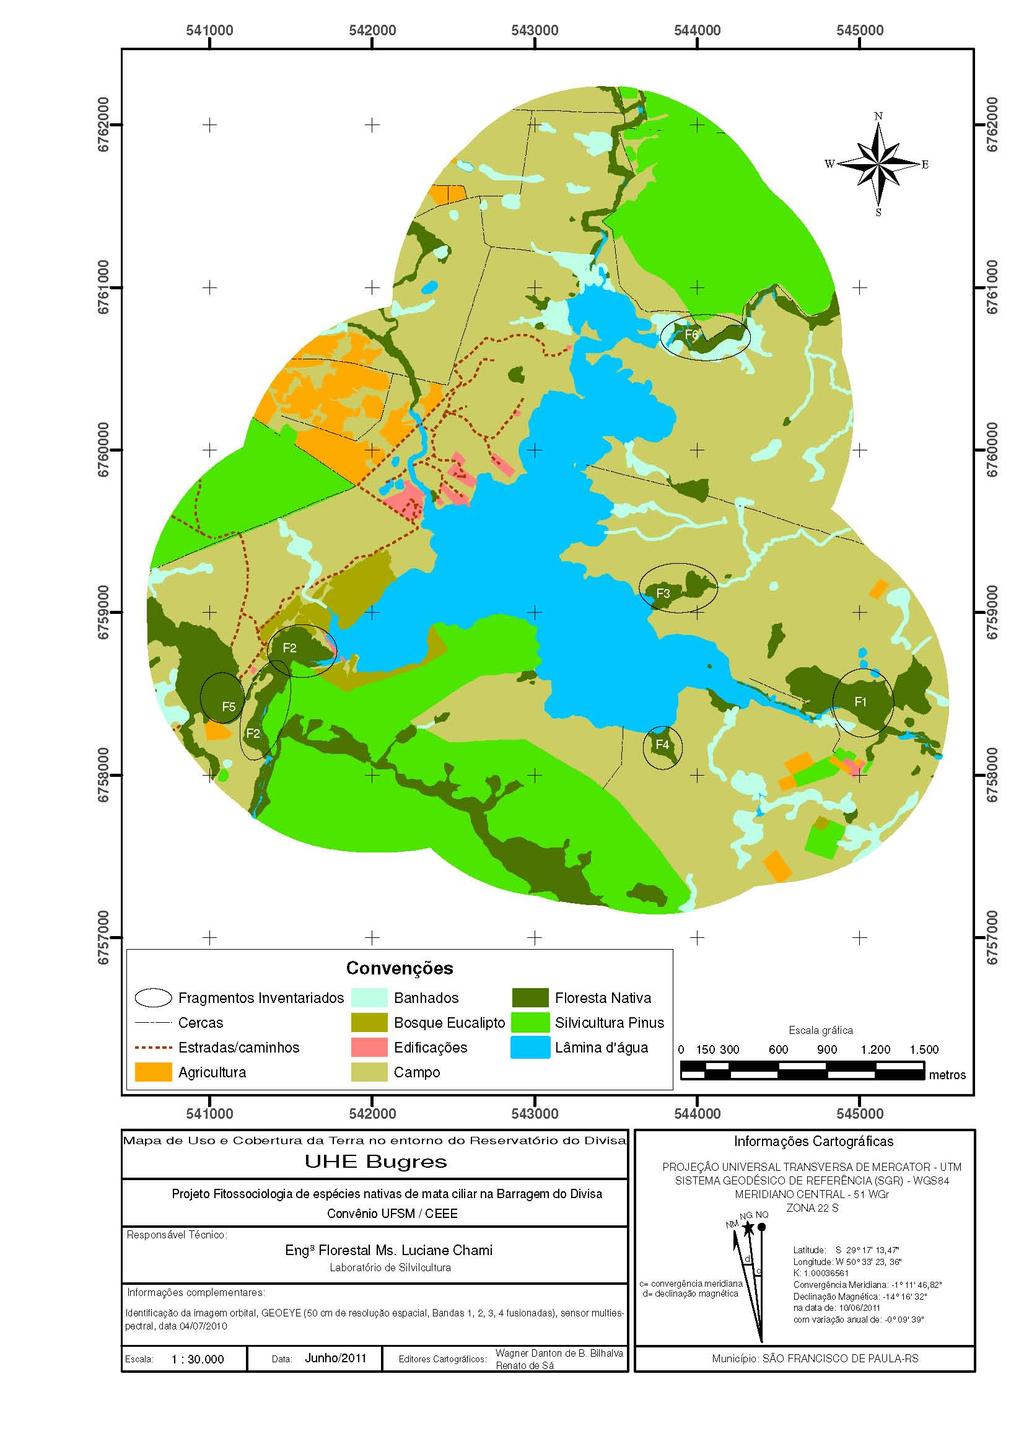 Anexo A - Mapa de uso e ocupação do solo no entorno do Reservatório Divisa, São Francisco de Paula, RS